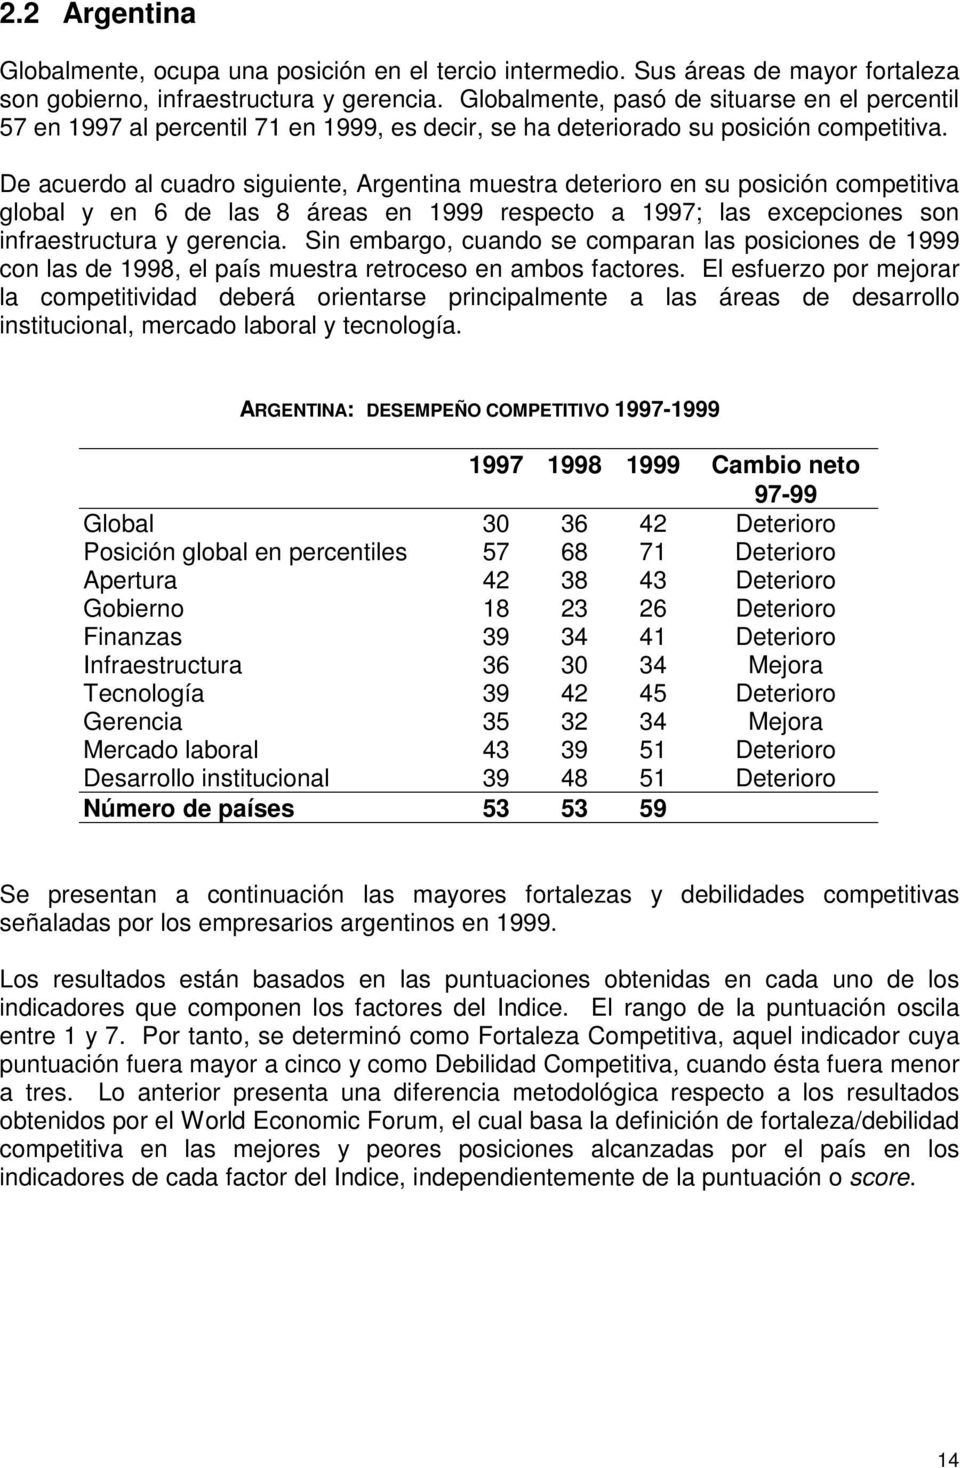 De acuerdo al cuadro siguiente, Argentina muestra deterioro en su posición competitiva global y en 6 de las 8 áreas en 1999 respecto a 1997; las excepciones son infraestructura y gerencia.